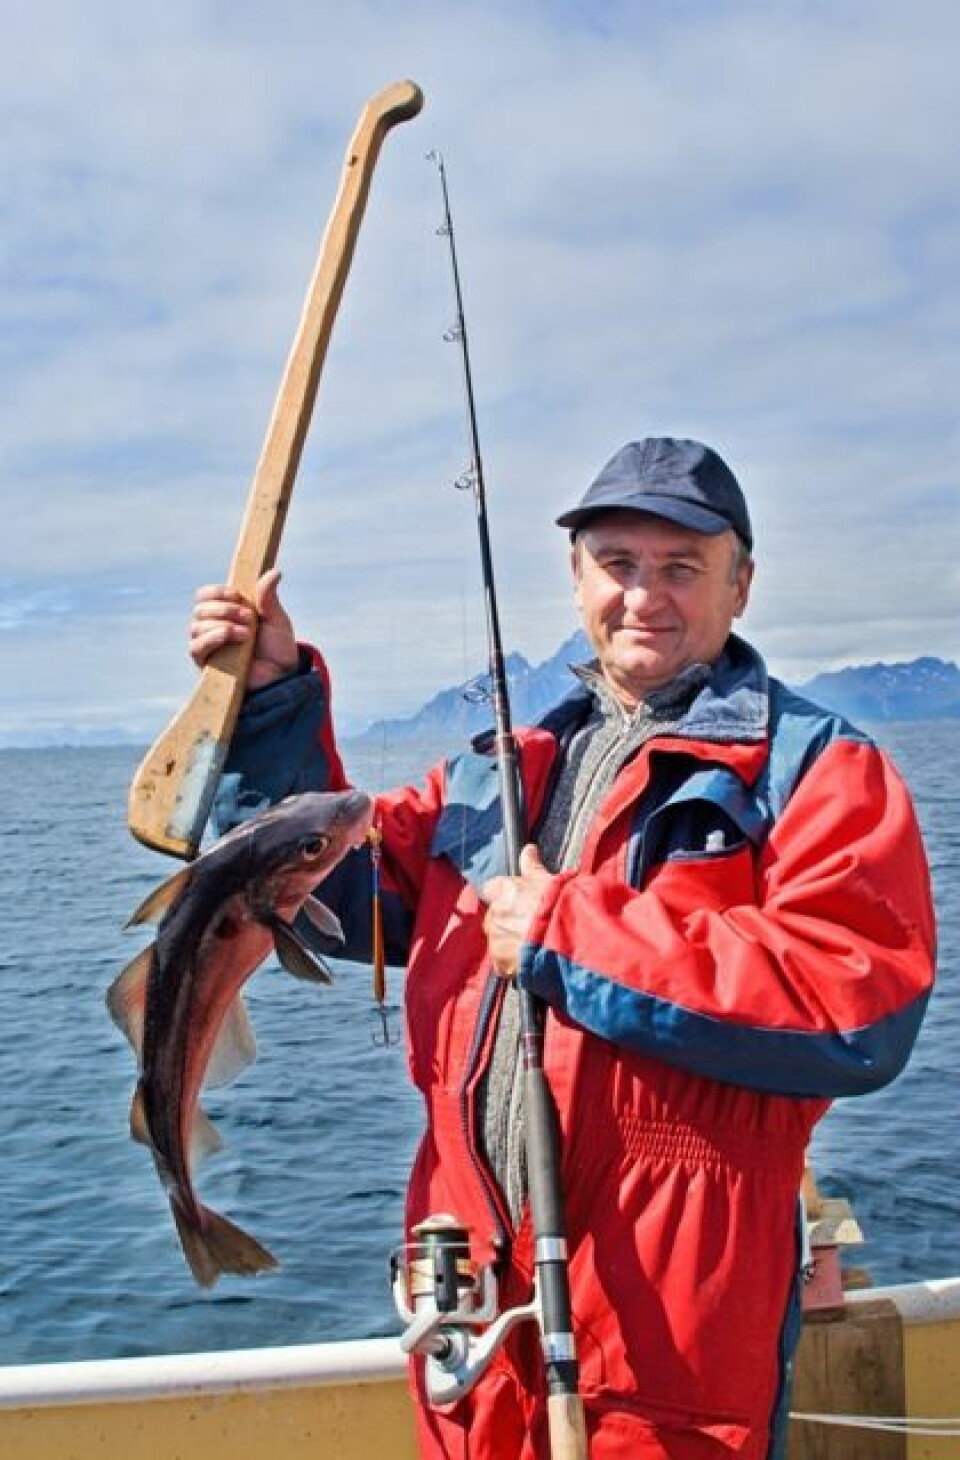 Yrkesfiskerne frykter at turistene tar for mye av fisken. (Illustrasjonsfoto: www.colourbox.no)